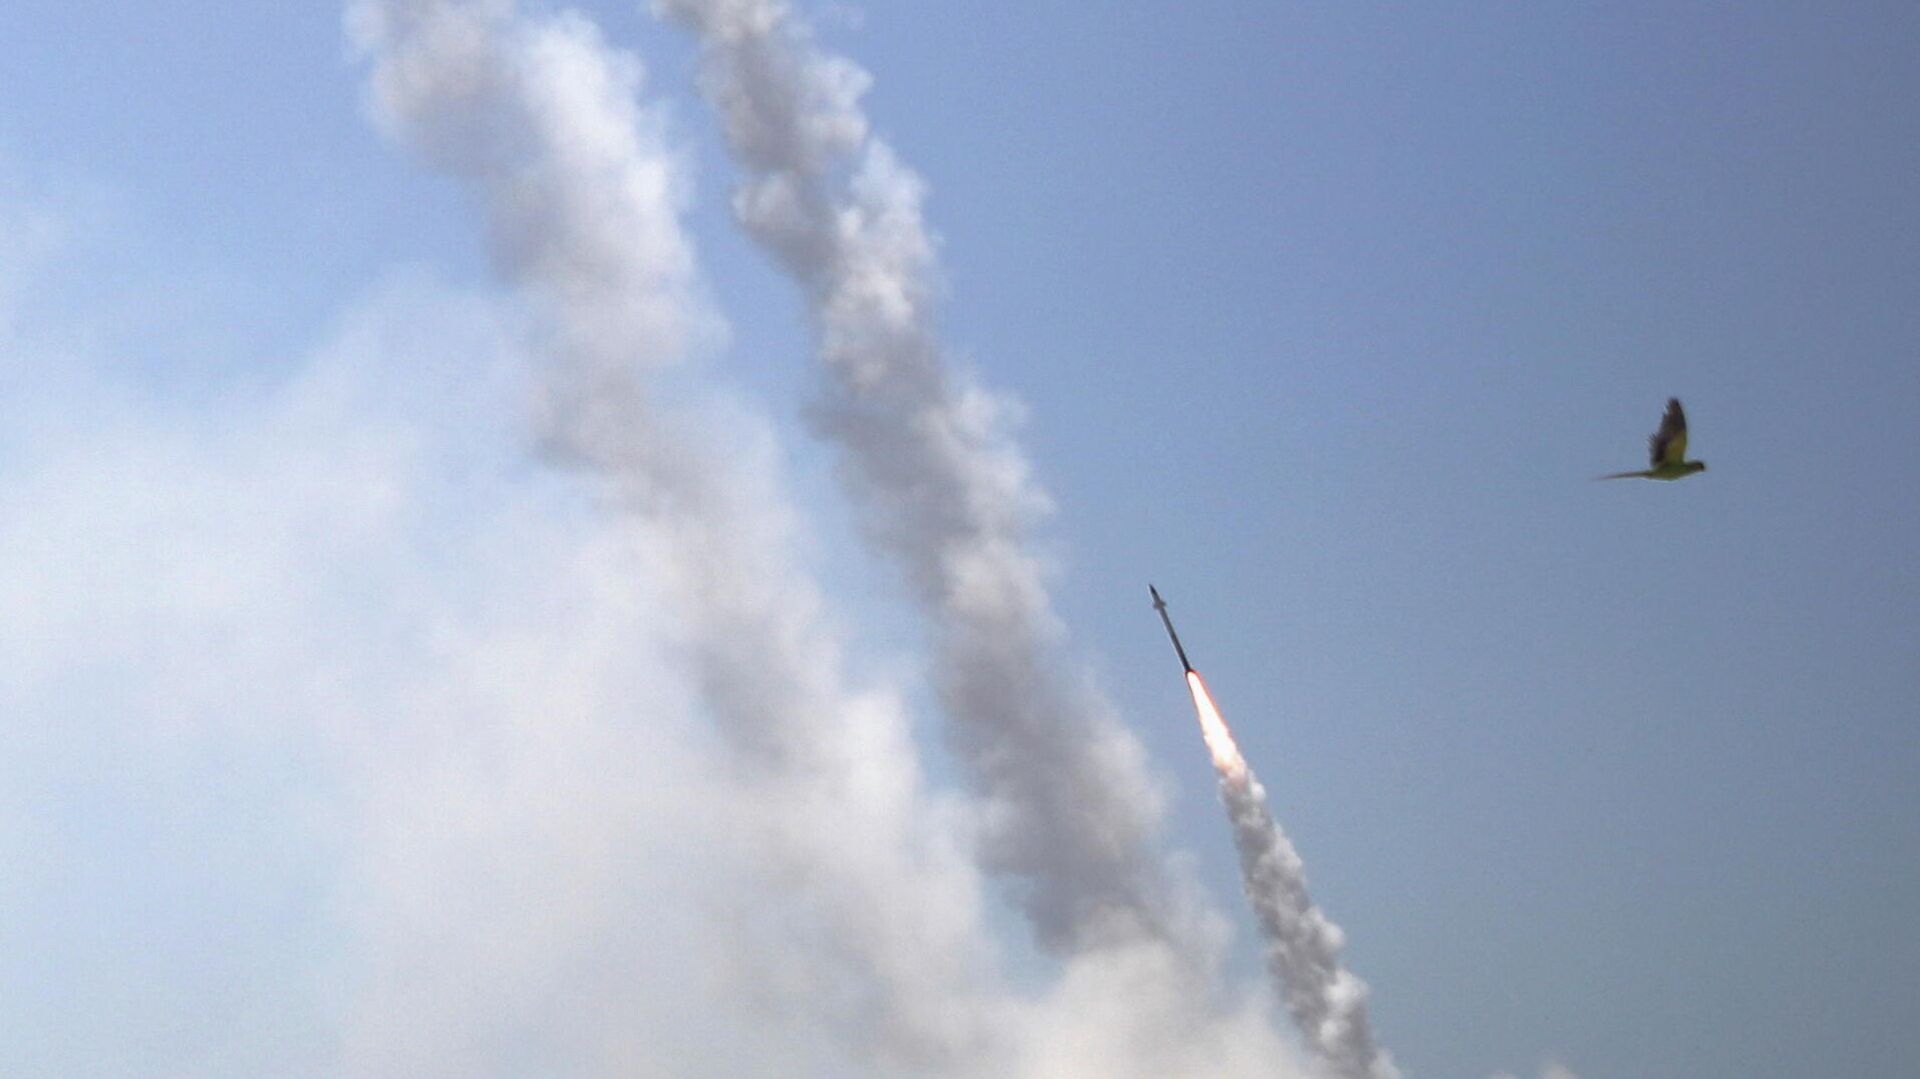 Противоракетная система Железный купол перехватывает ракеты, запущенные из сектора Газа в направлении Израиля - РИА Новости, 1920, 14.05.2021